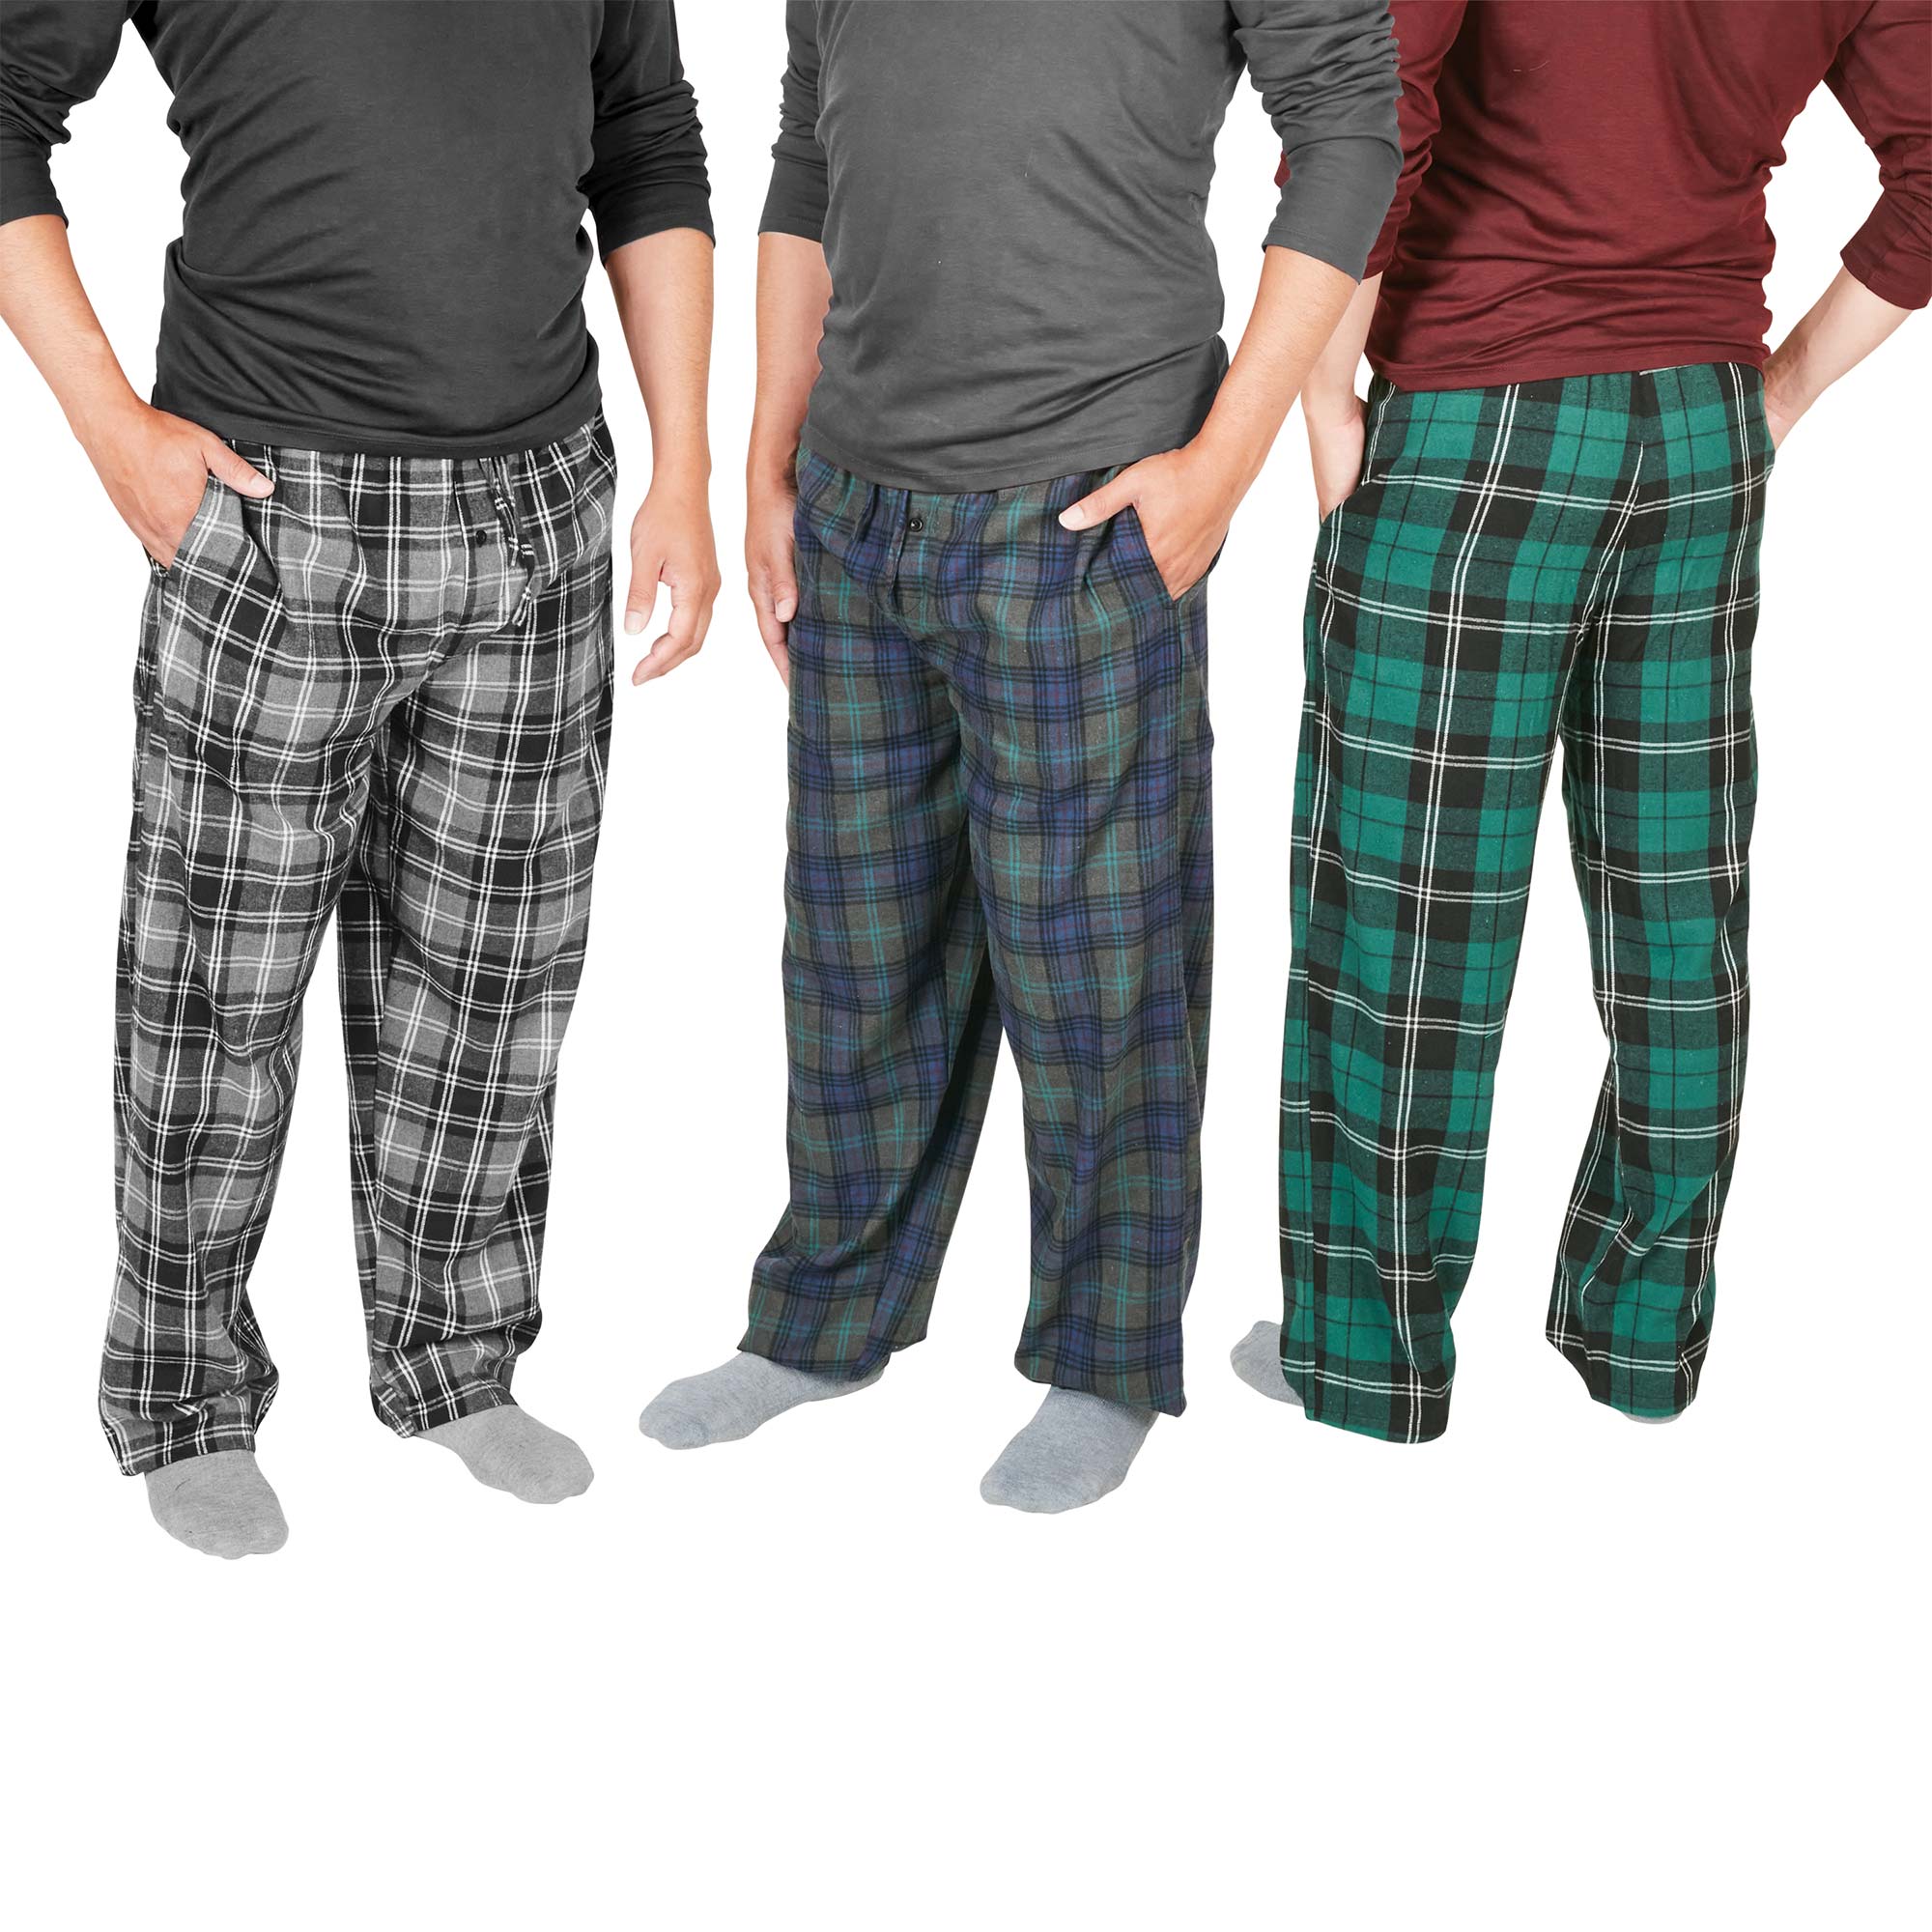 Men's Flannel Pants - 3 Pack